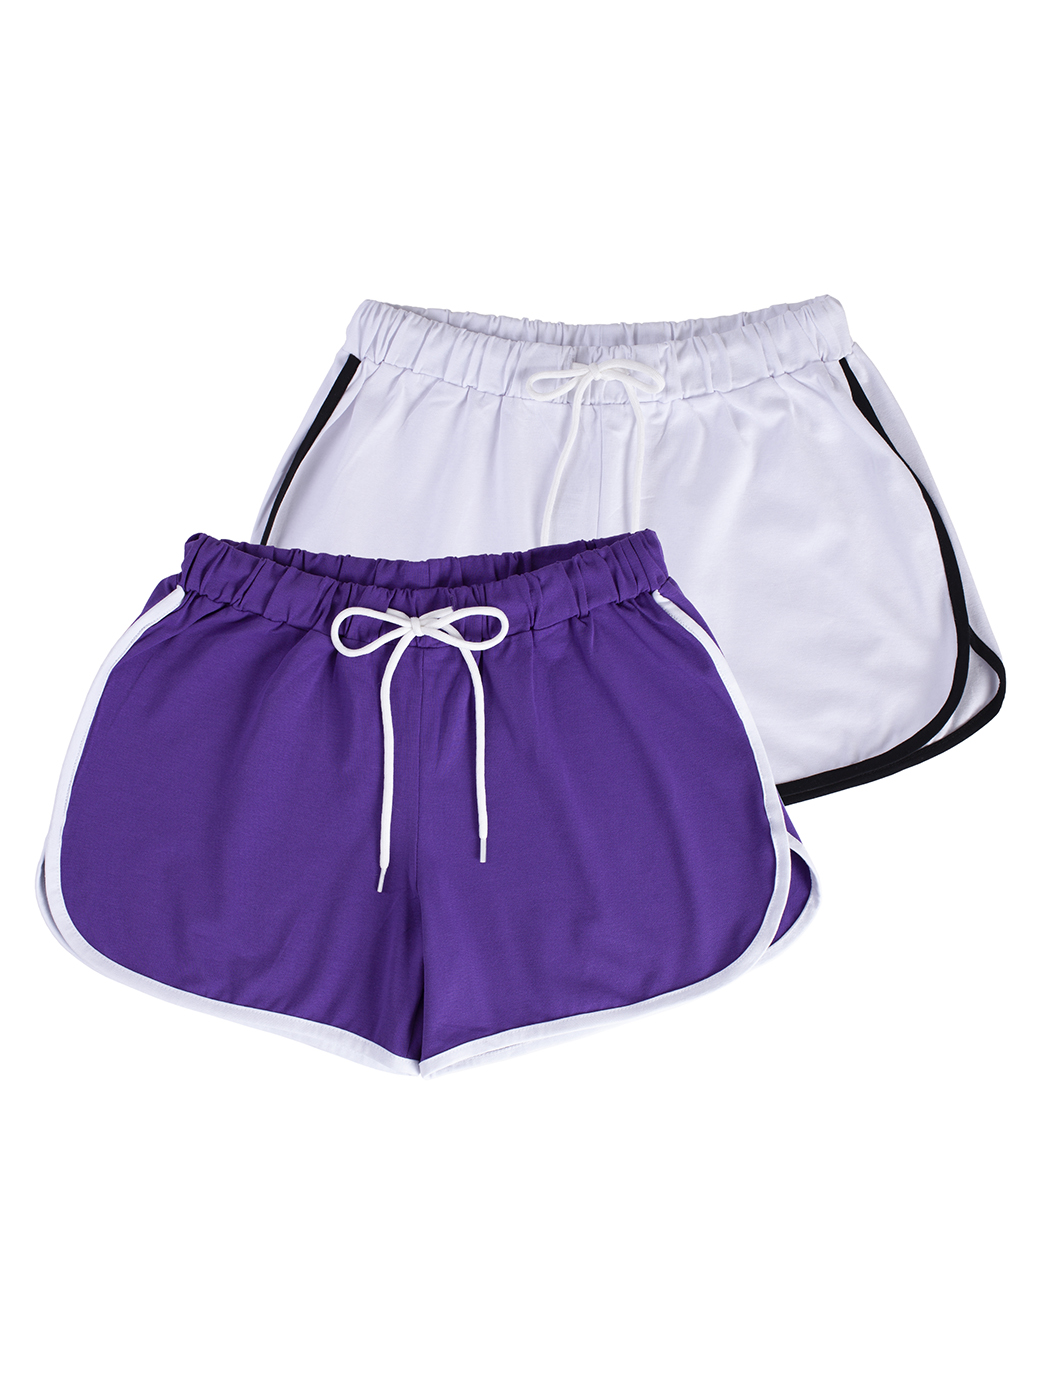 Cпортивные шорты женские Lunarable ksrt002-2_ фиолетовые S